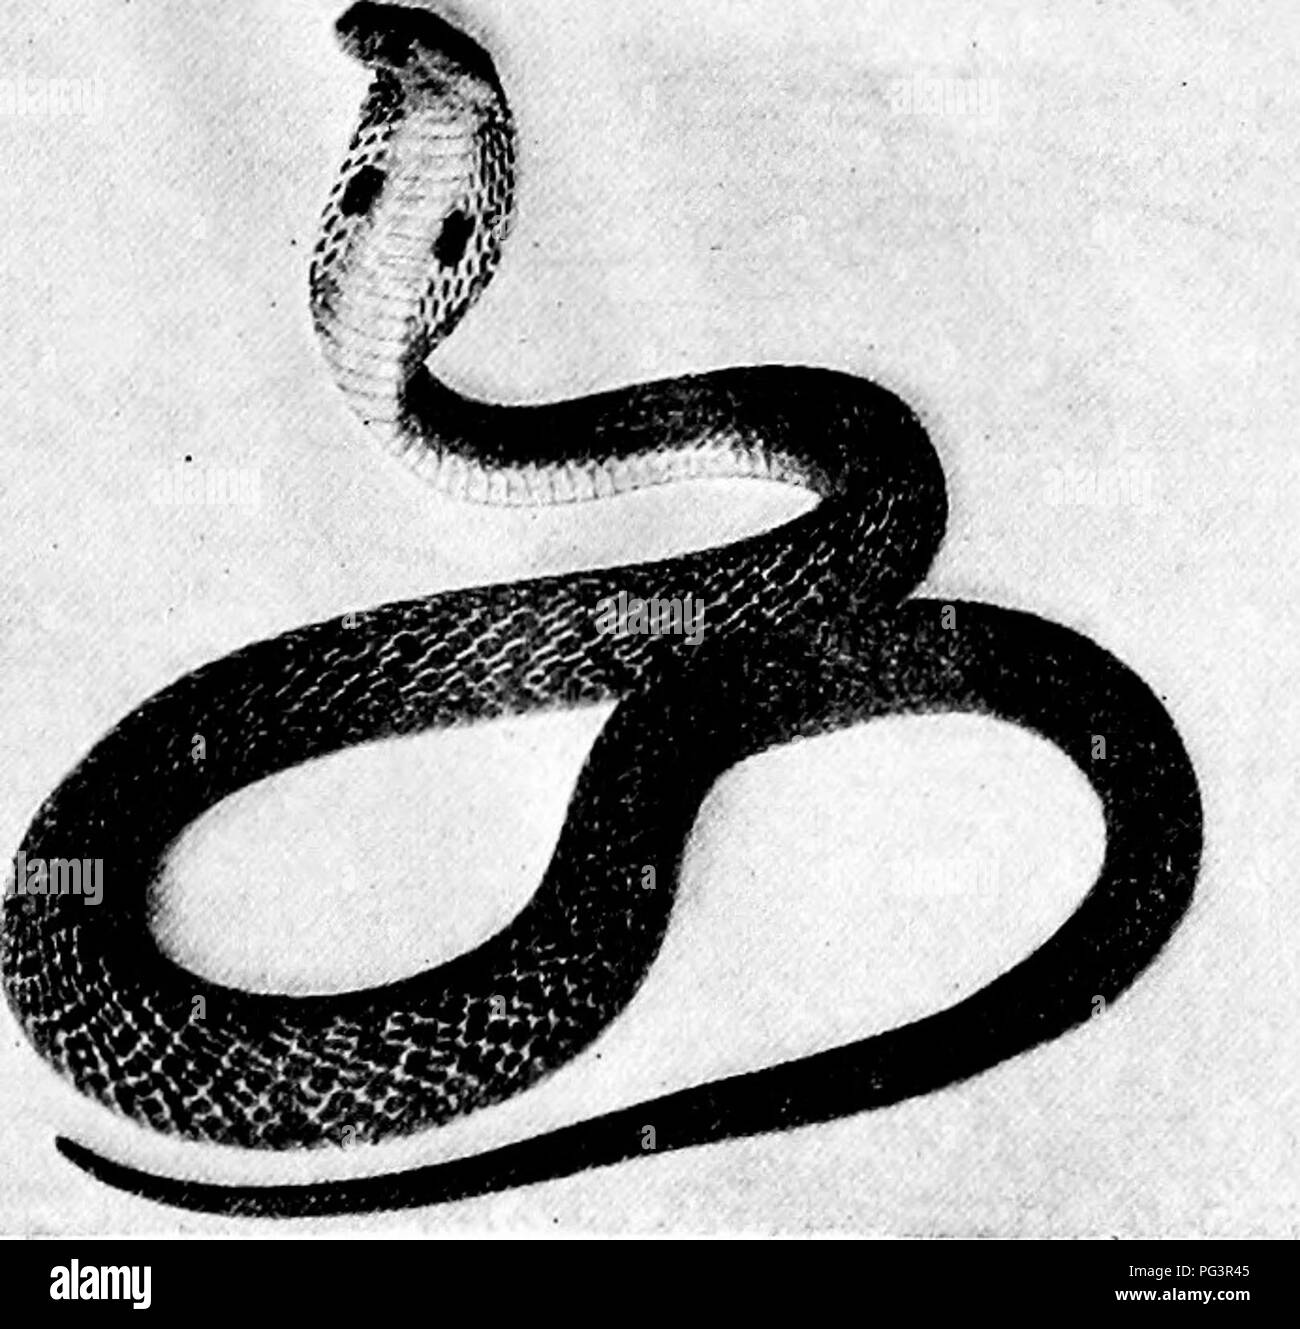 . Popolare la guida ufficiale per la New York Zoological Park. New York Zoological Park. NEW YORK Zoological Park. 181. COBRA-de-CAPELLO. sula, spesso chiamato Snake-Eating Cobra, è il più pericoloso di tutti i serpenti, perché è il più grande e il più ath- letic della specie velenosa, e per il suo morso non esiste alcun antidoto efficace. Essa alimenta solo sulla vita serpenti. L' AMMENDA campione esposto è di circa dieci metri di lunghezza. Il Cobra-de-Capello, {Naja tripudians), di cui alcuni bei campioni sono mostrati, è il terrore di India, dove si uccide tra 18.000 e 20.000 persone all'anno! Questo è il m Foto Stock